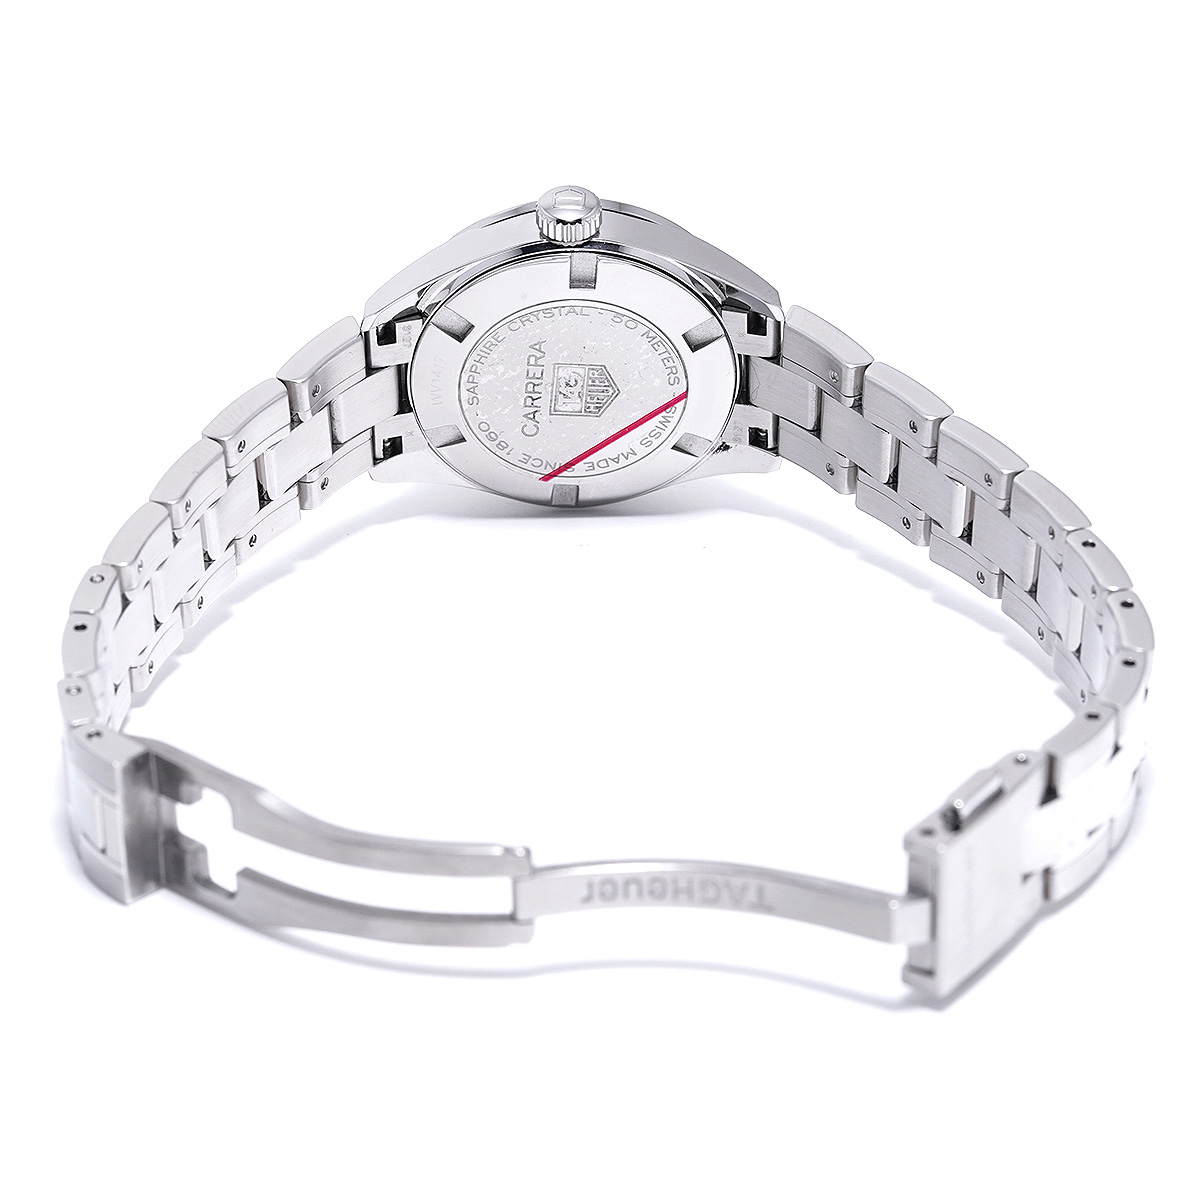 タグ ホイヤー TAG HEUER WV1417.BA0793 ピンクシェル /ダイヤモンド レディース 腕時計